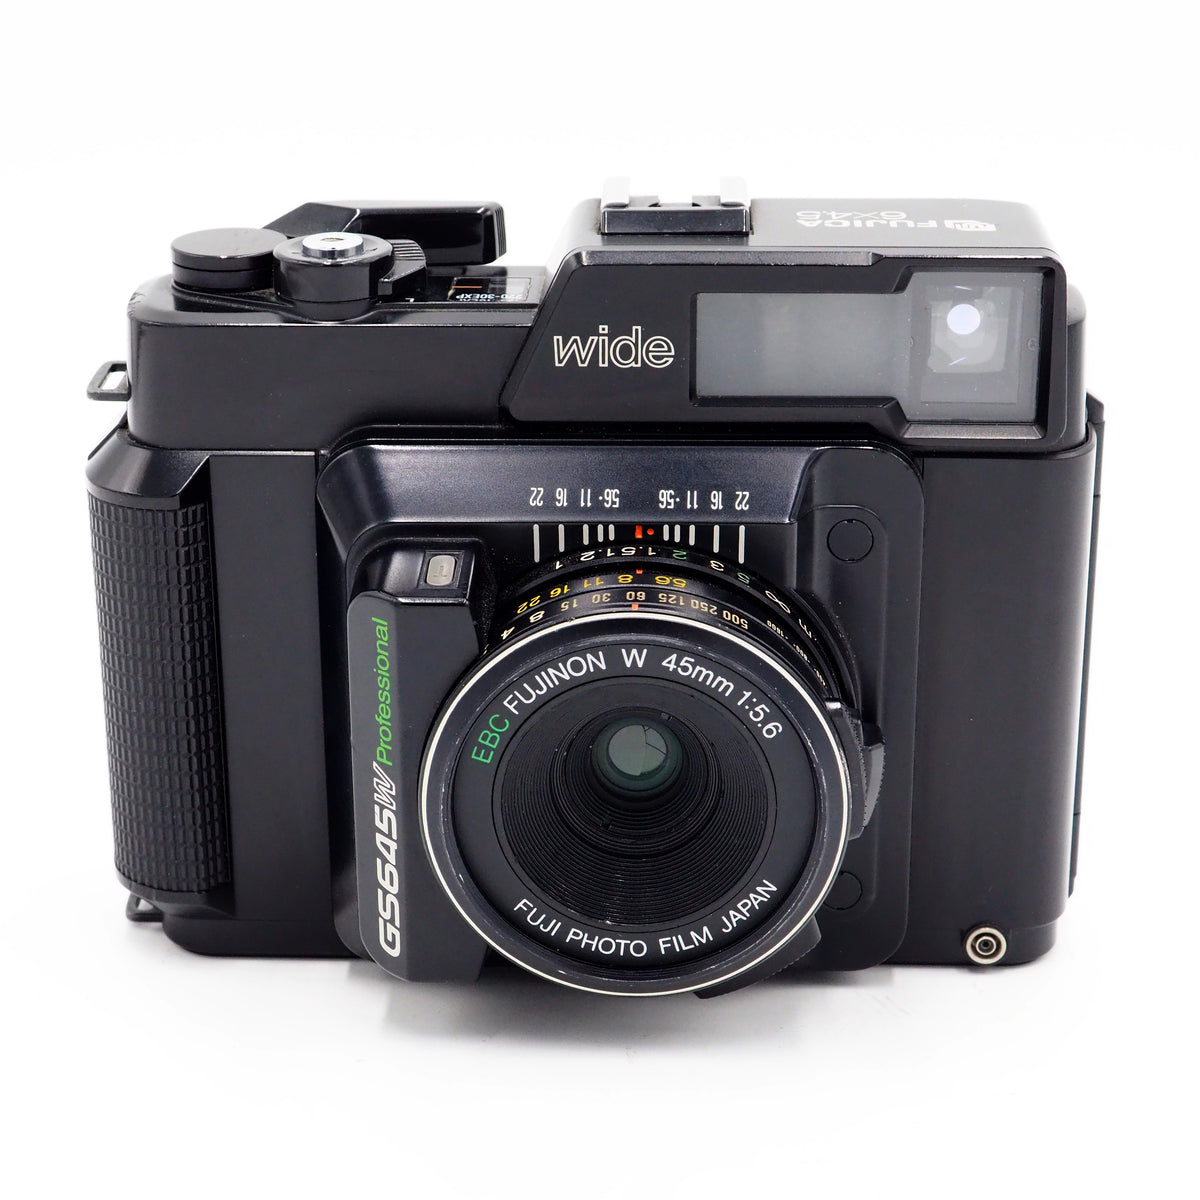 Fuji Fujica GS645W Professional Wide with Fujinon W 45mm F/5.6 Lens -